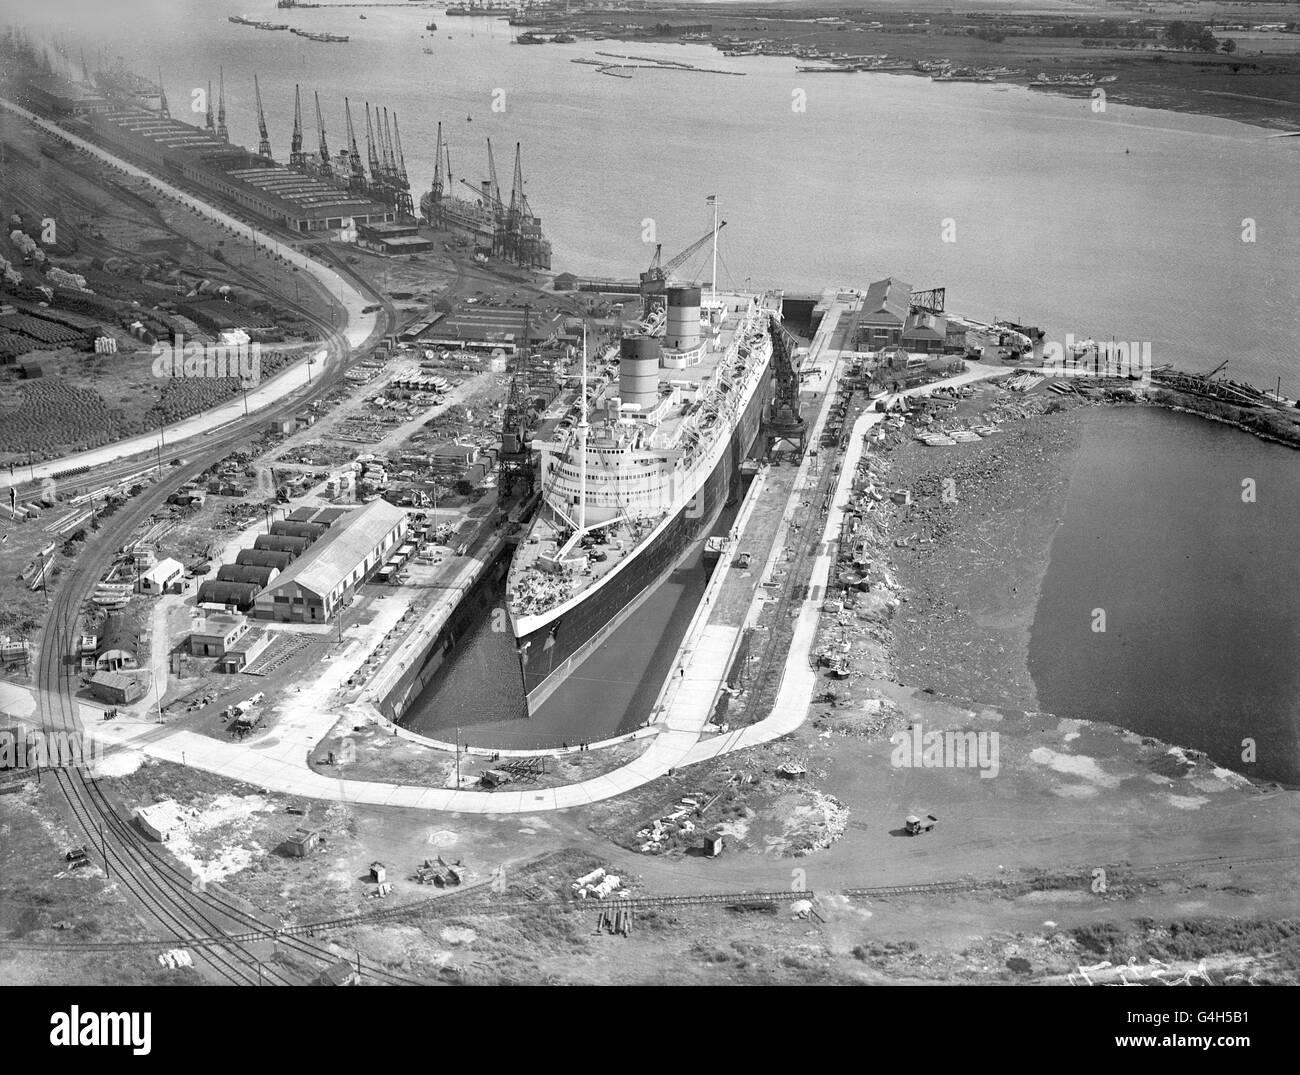 Die 85,000 Tonnen schwere 'Queen Elizabeth' nimmt fast den gesamten Bereich des riesigen King George V Docks in Southampton ein. Das riesige Schiff wird von seiner Rolle als Truppenschiff im Krieg zu seiner Rolle als Luxuskreuzfahrtschiff in der Friedenszeit umgerüstet. Stockfoto